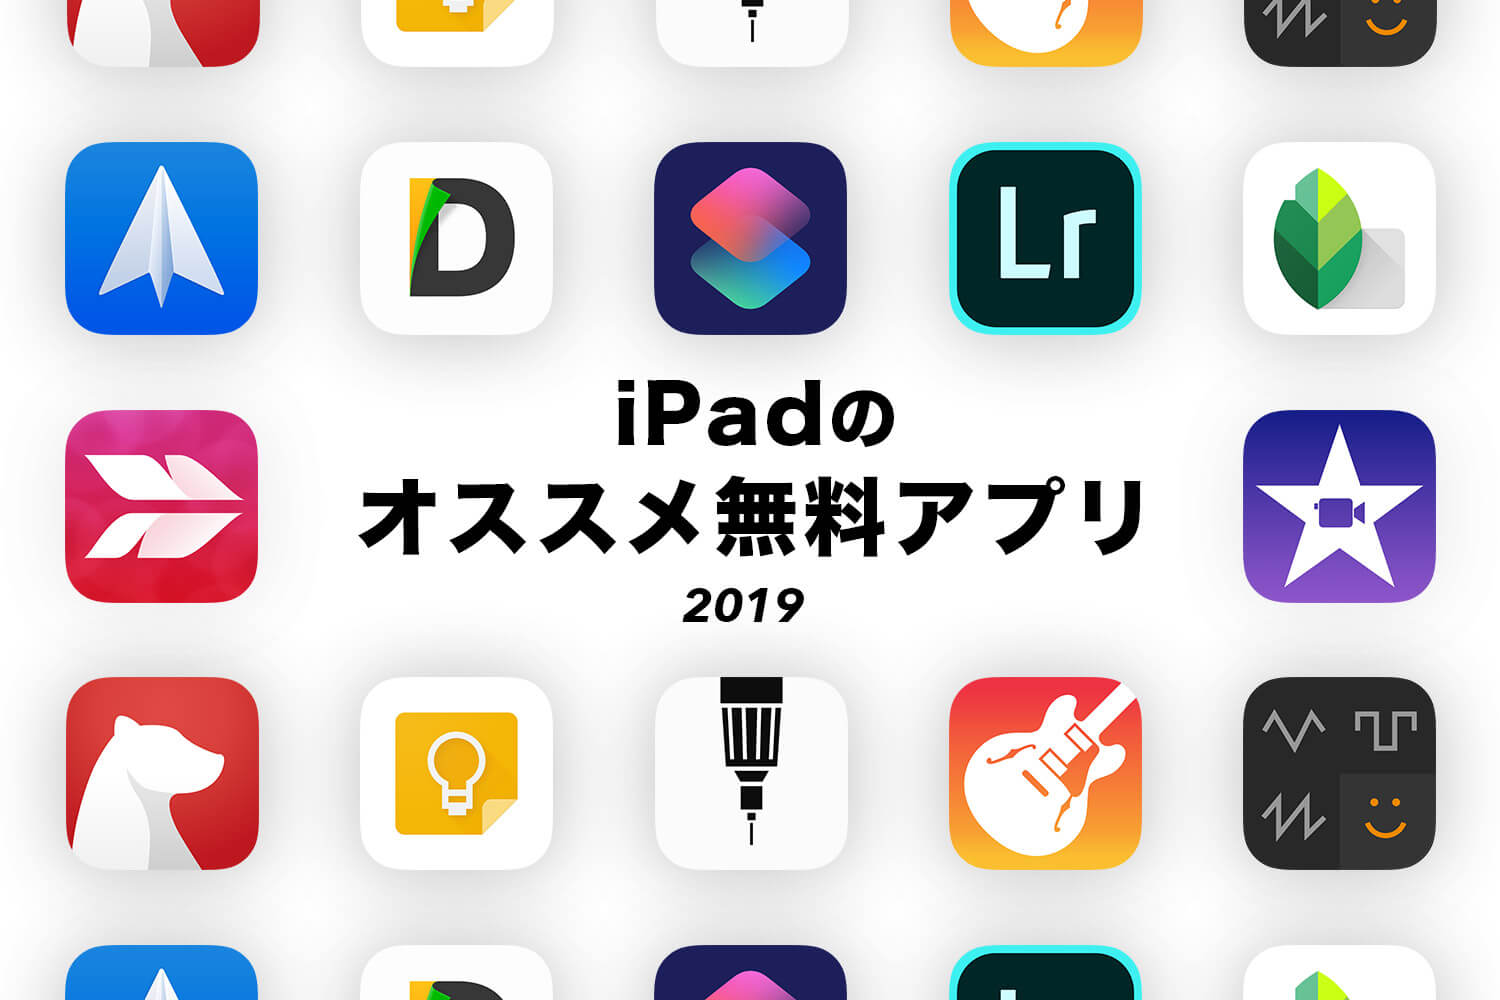 iPadを買ったらスグにいれたいオススメ無料アプリ【2019年版】